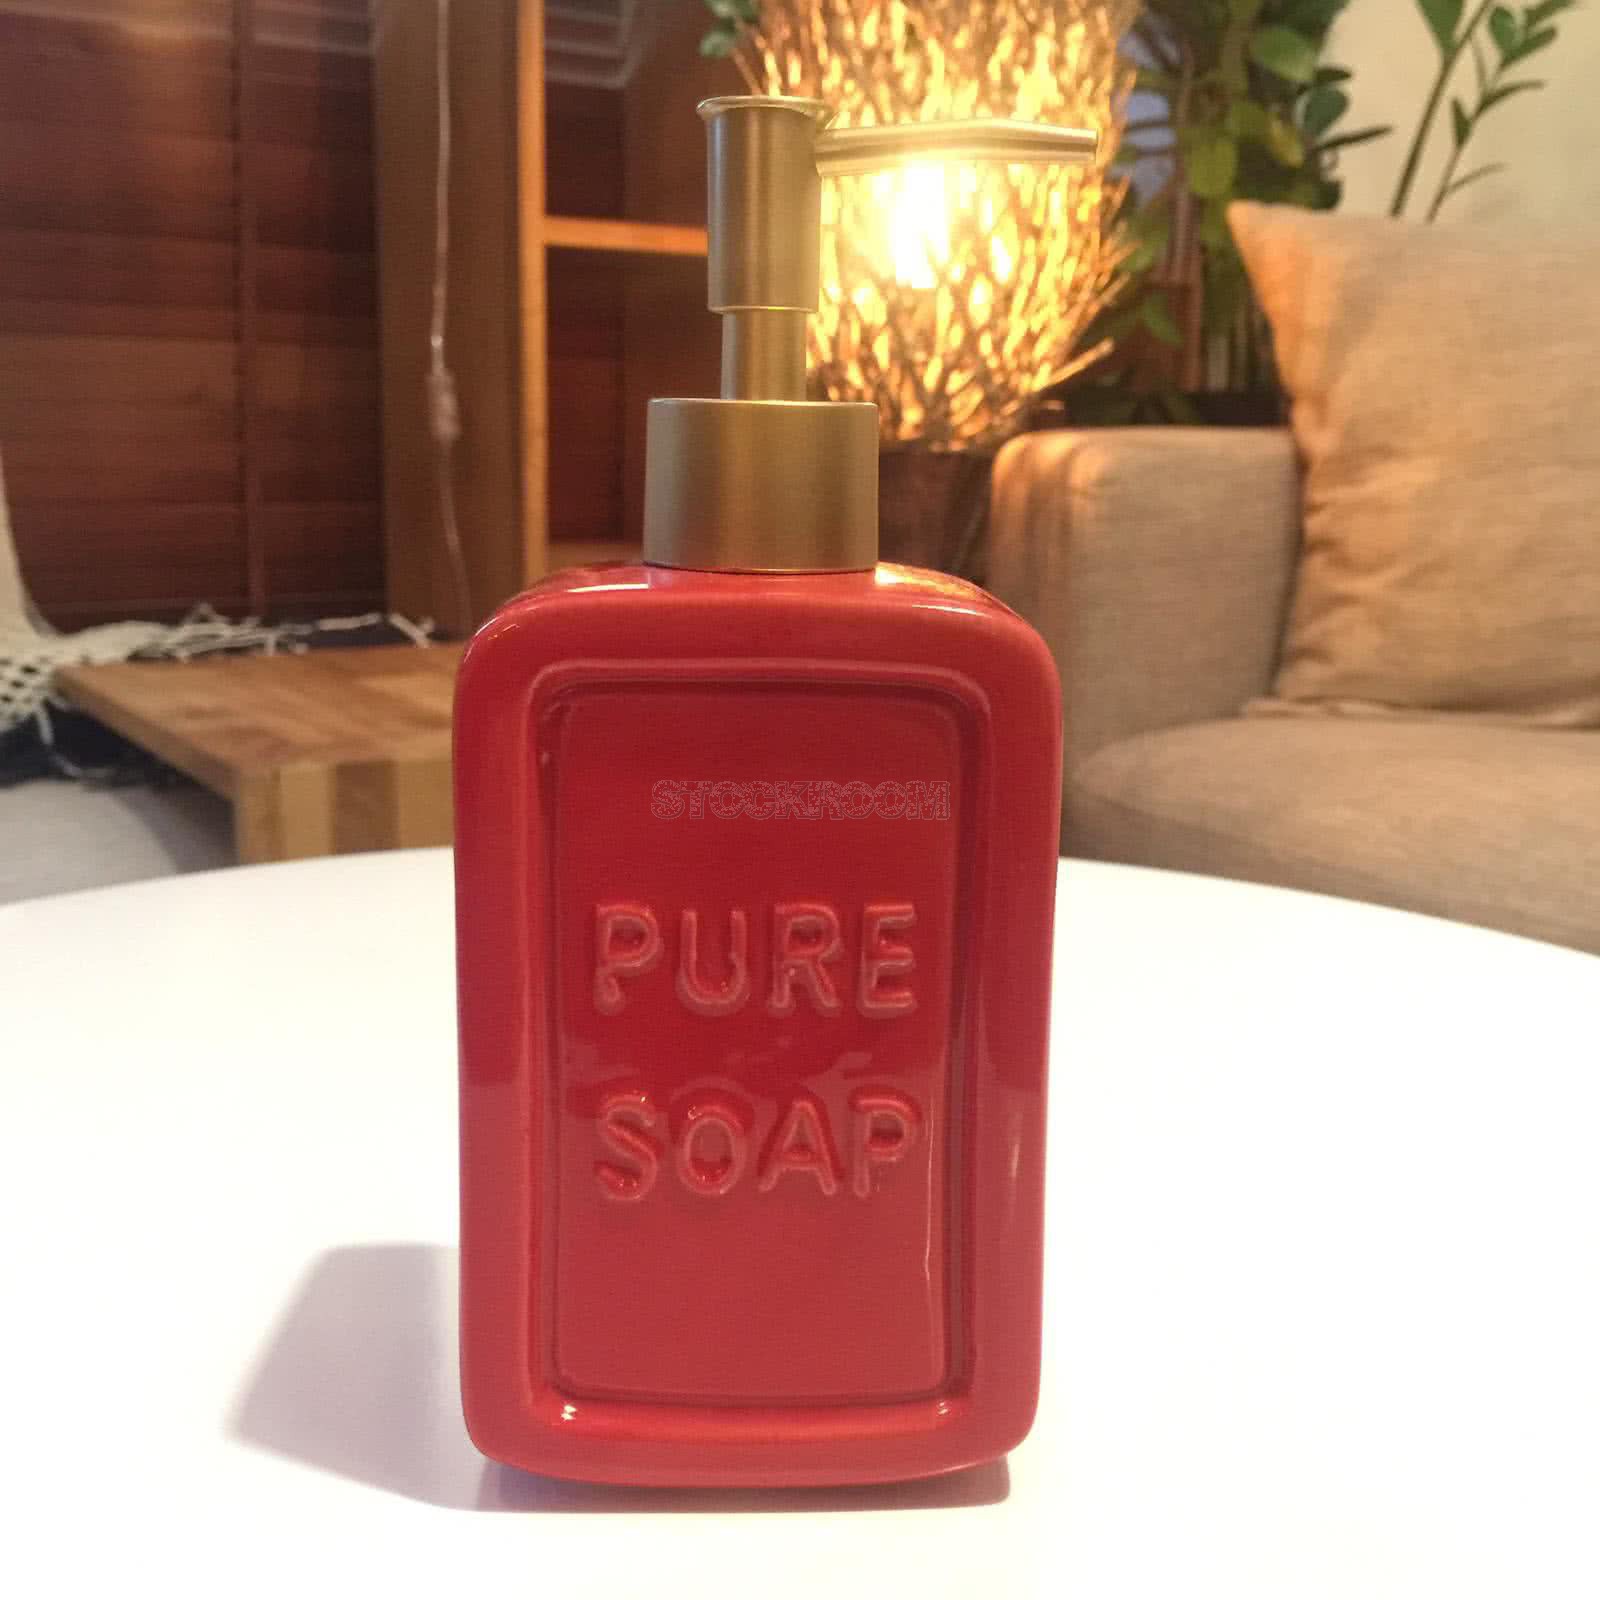 Pure Soap Dispenser